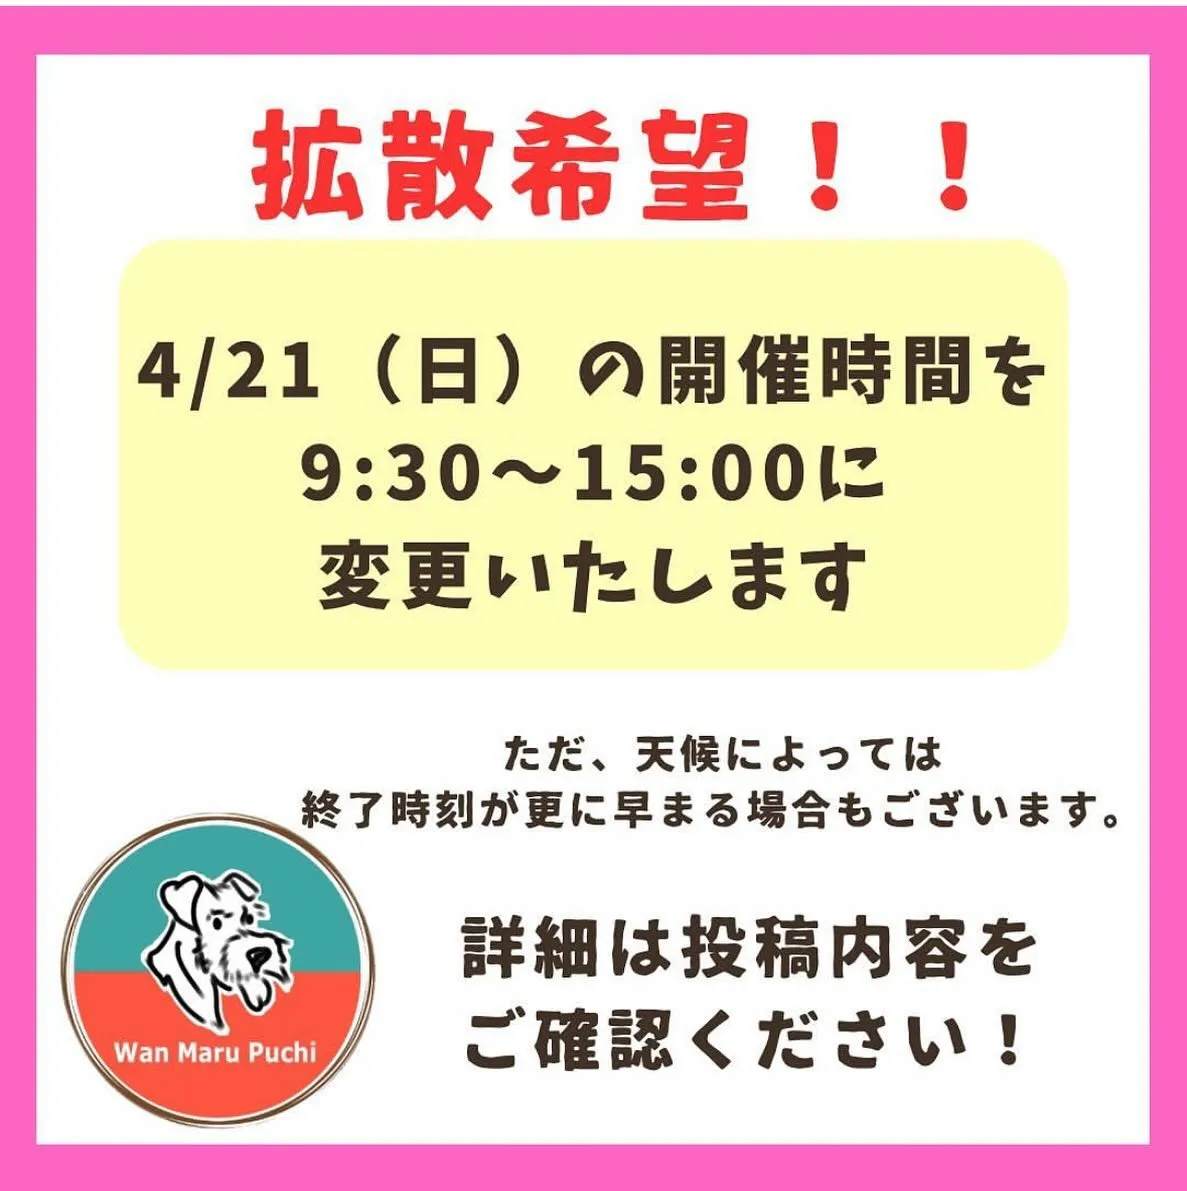 明日4月21日に開催される石川県のドッグイベント『ワンまるプ...